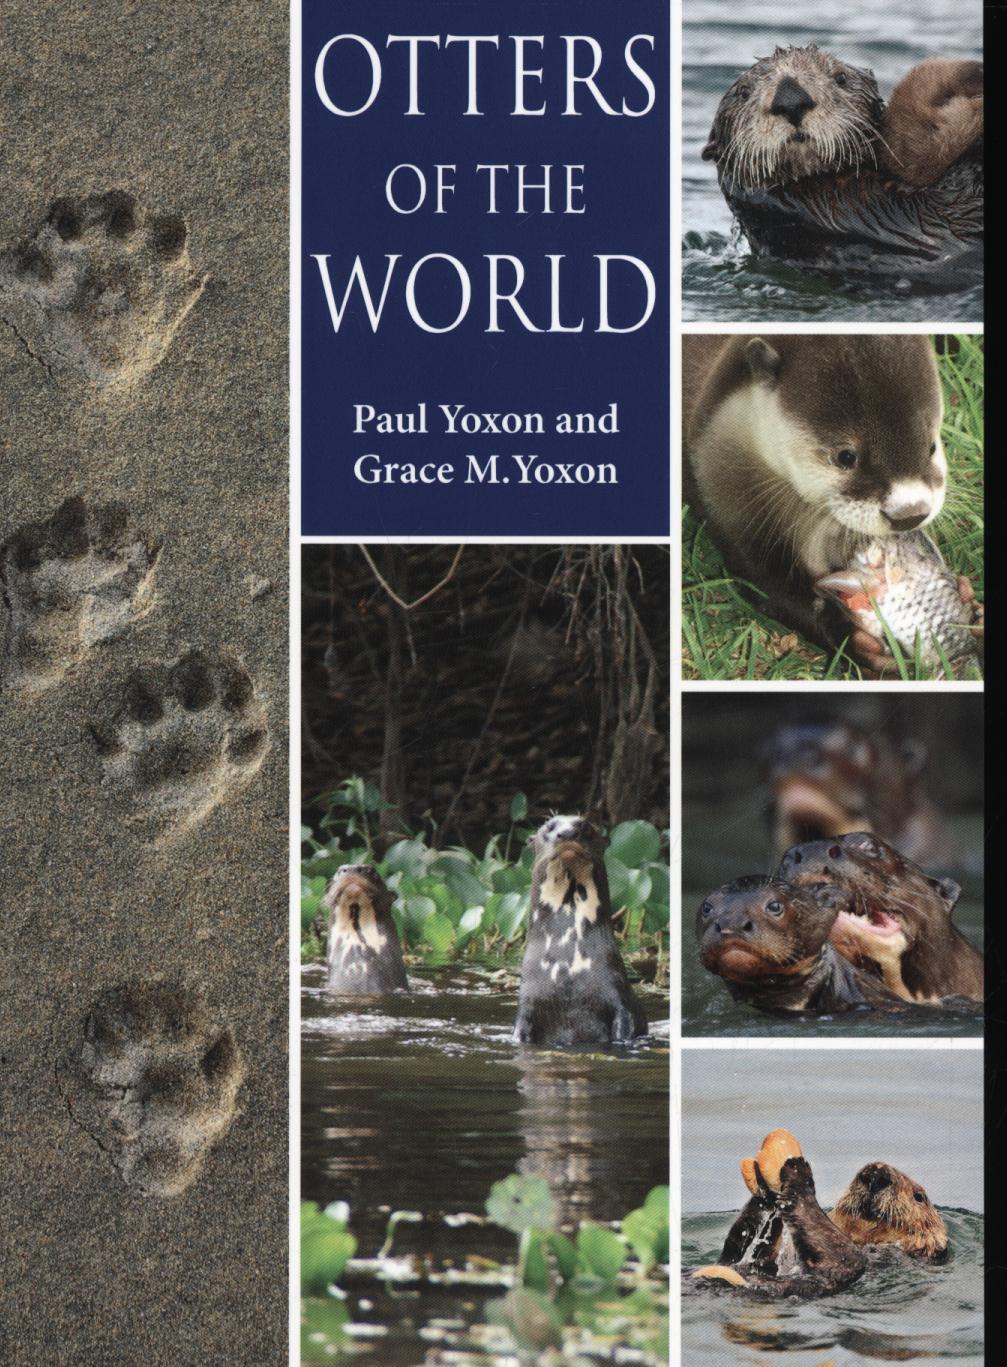 Otters of the World - Paul Yoxon